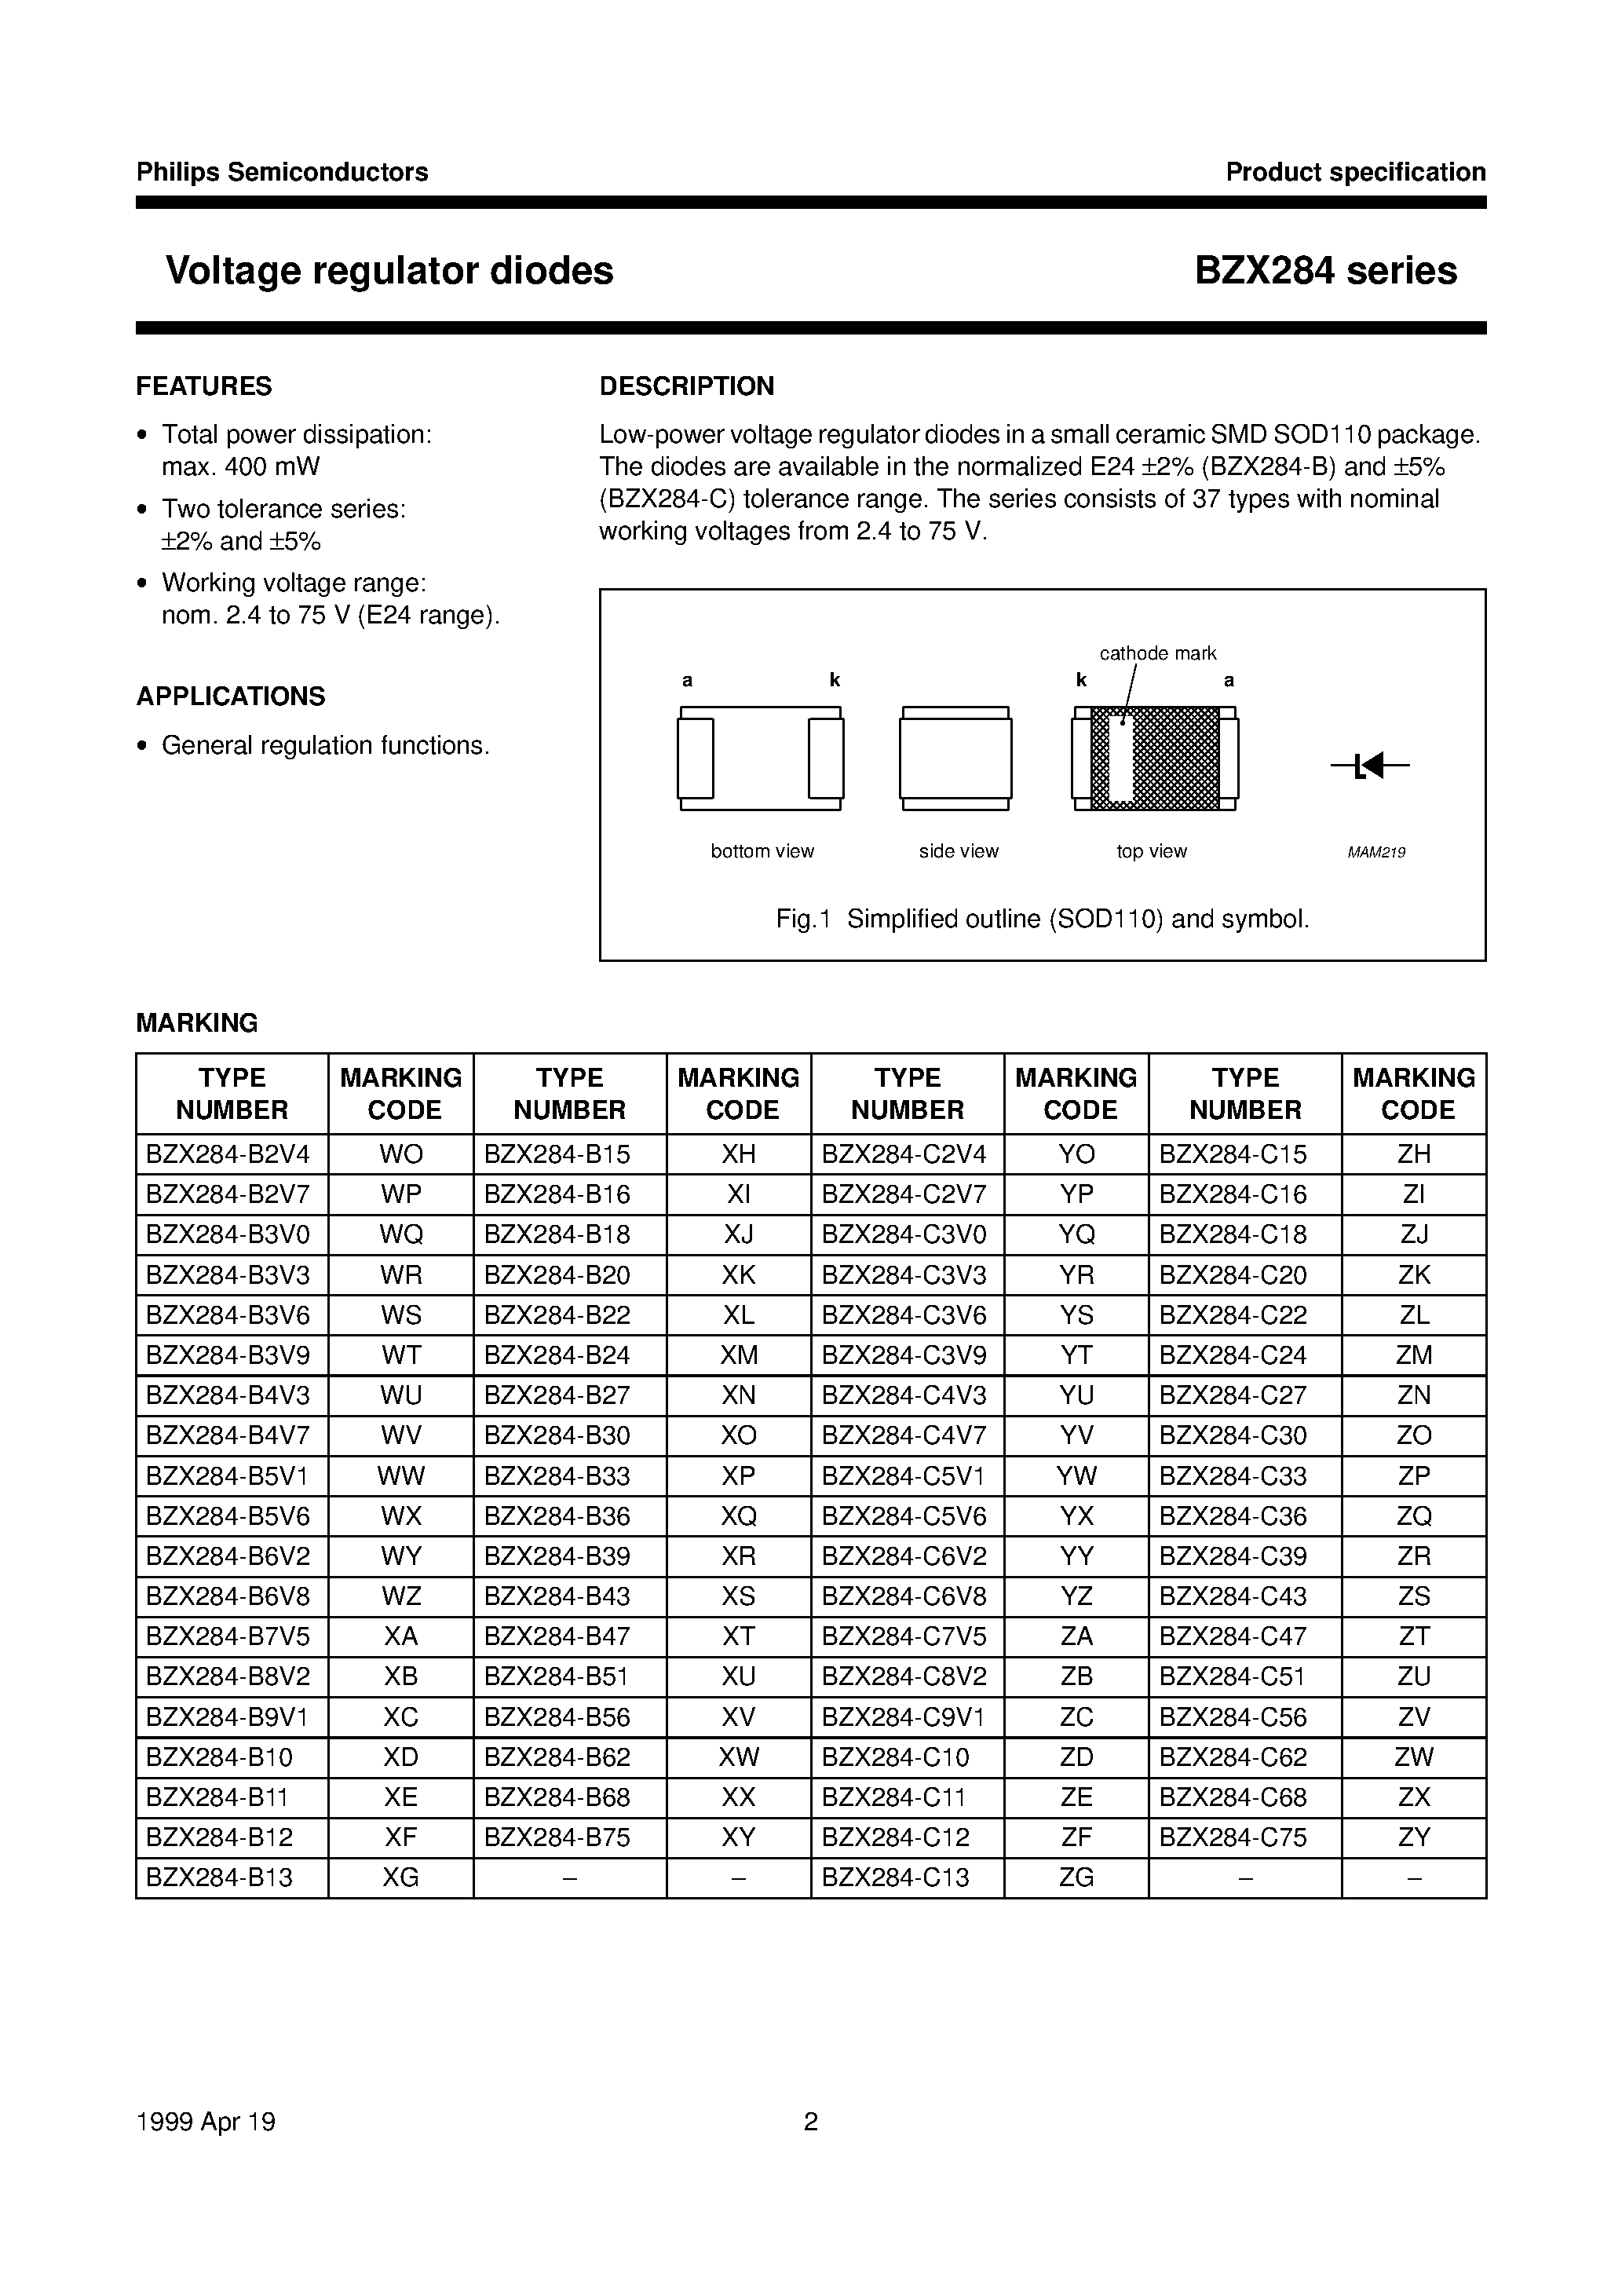 Даташит BZX284-B5V1 - Voltage regulator diodes страница 2